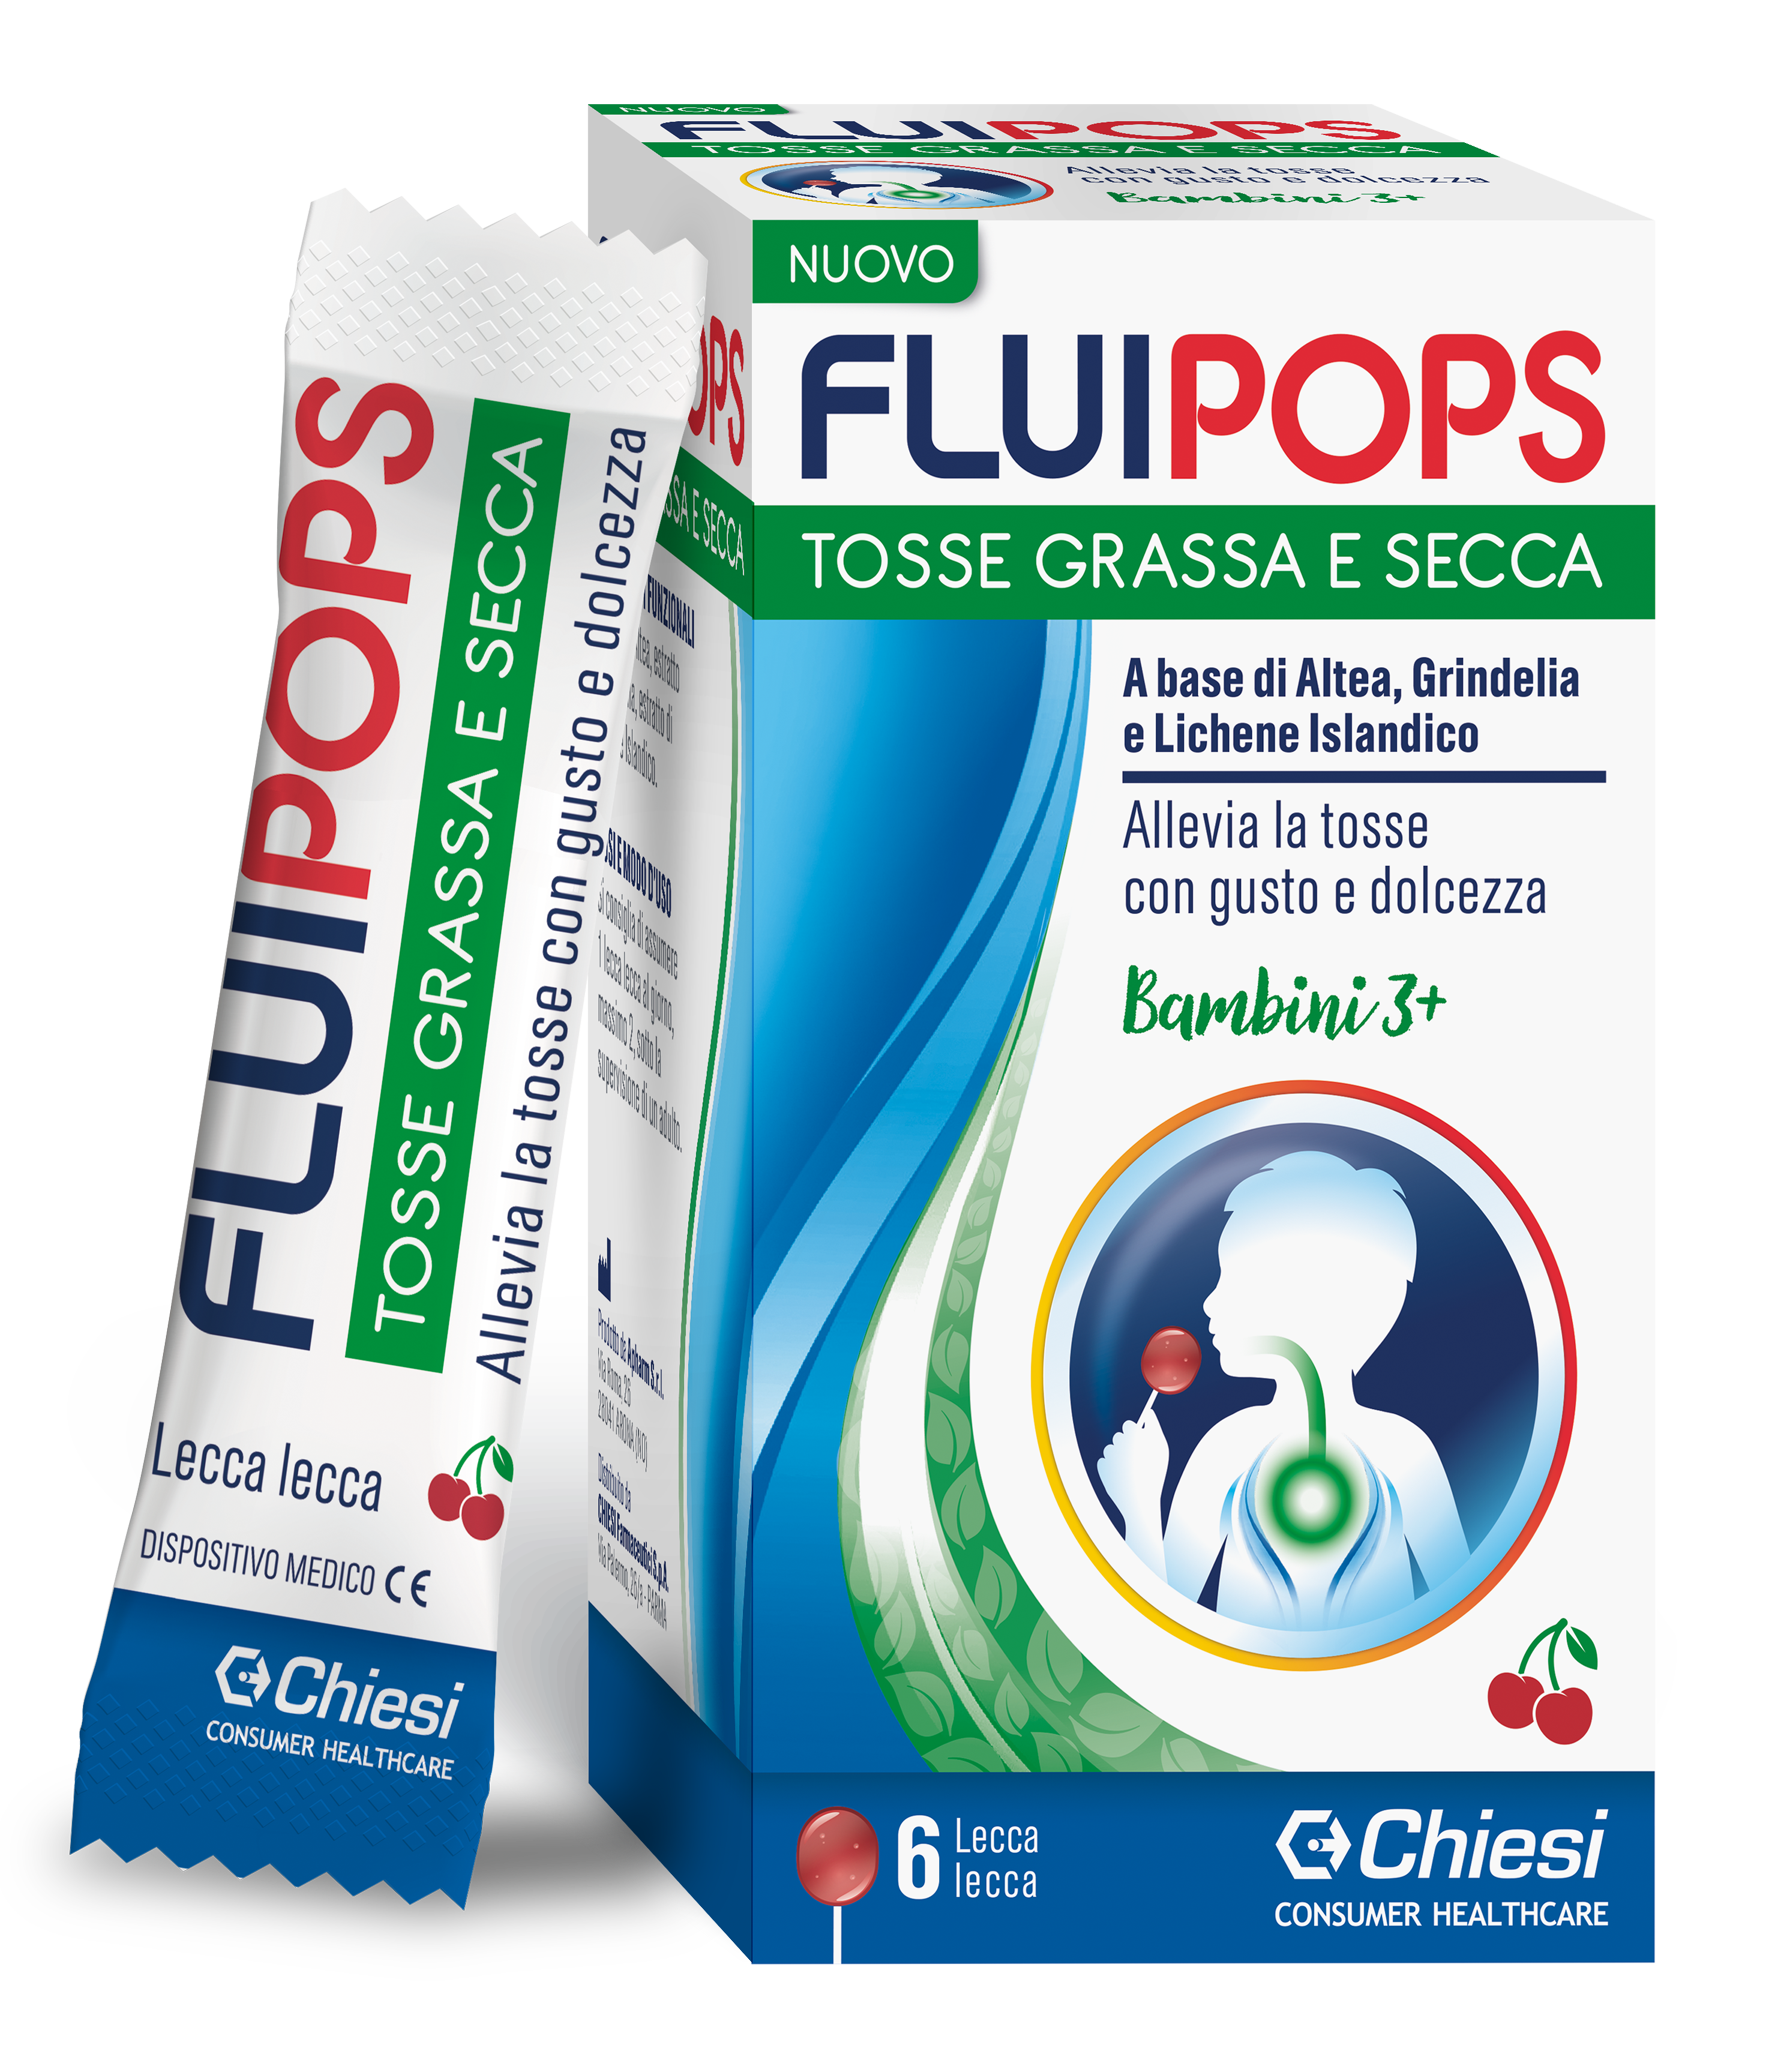 Immagine della confezione di Fluipops, farmaco di Chiesi Farmaceutici S.p.A.